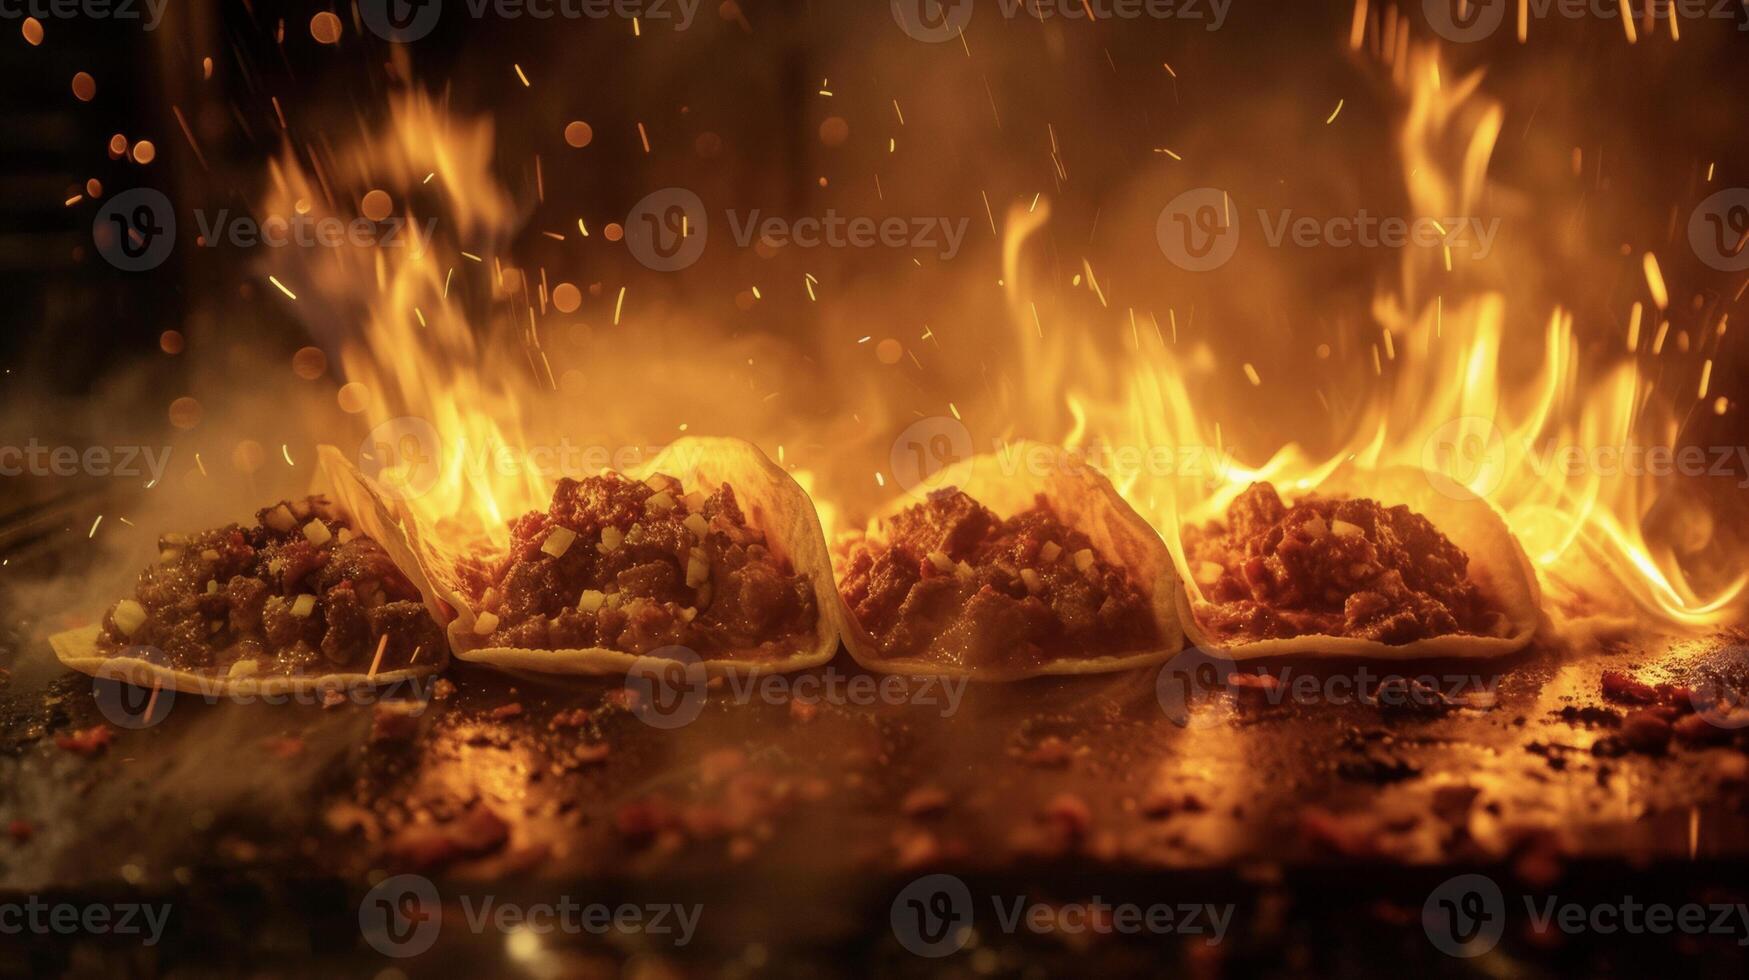 een boeiend moment gevangen genomen in een beeld net zo rundvlees taco's sissen en knal Aan een heet bakplaat omhuld in een glinsterende gloed van de vlammen onderstaand. alleen maar een kijken Bij deze foto